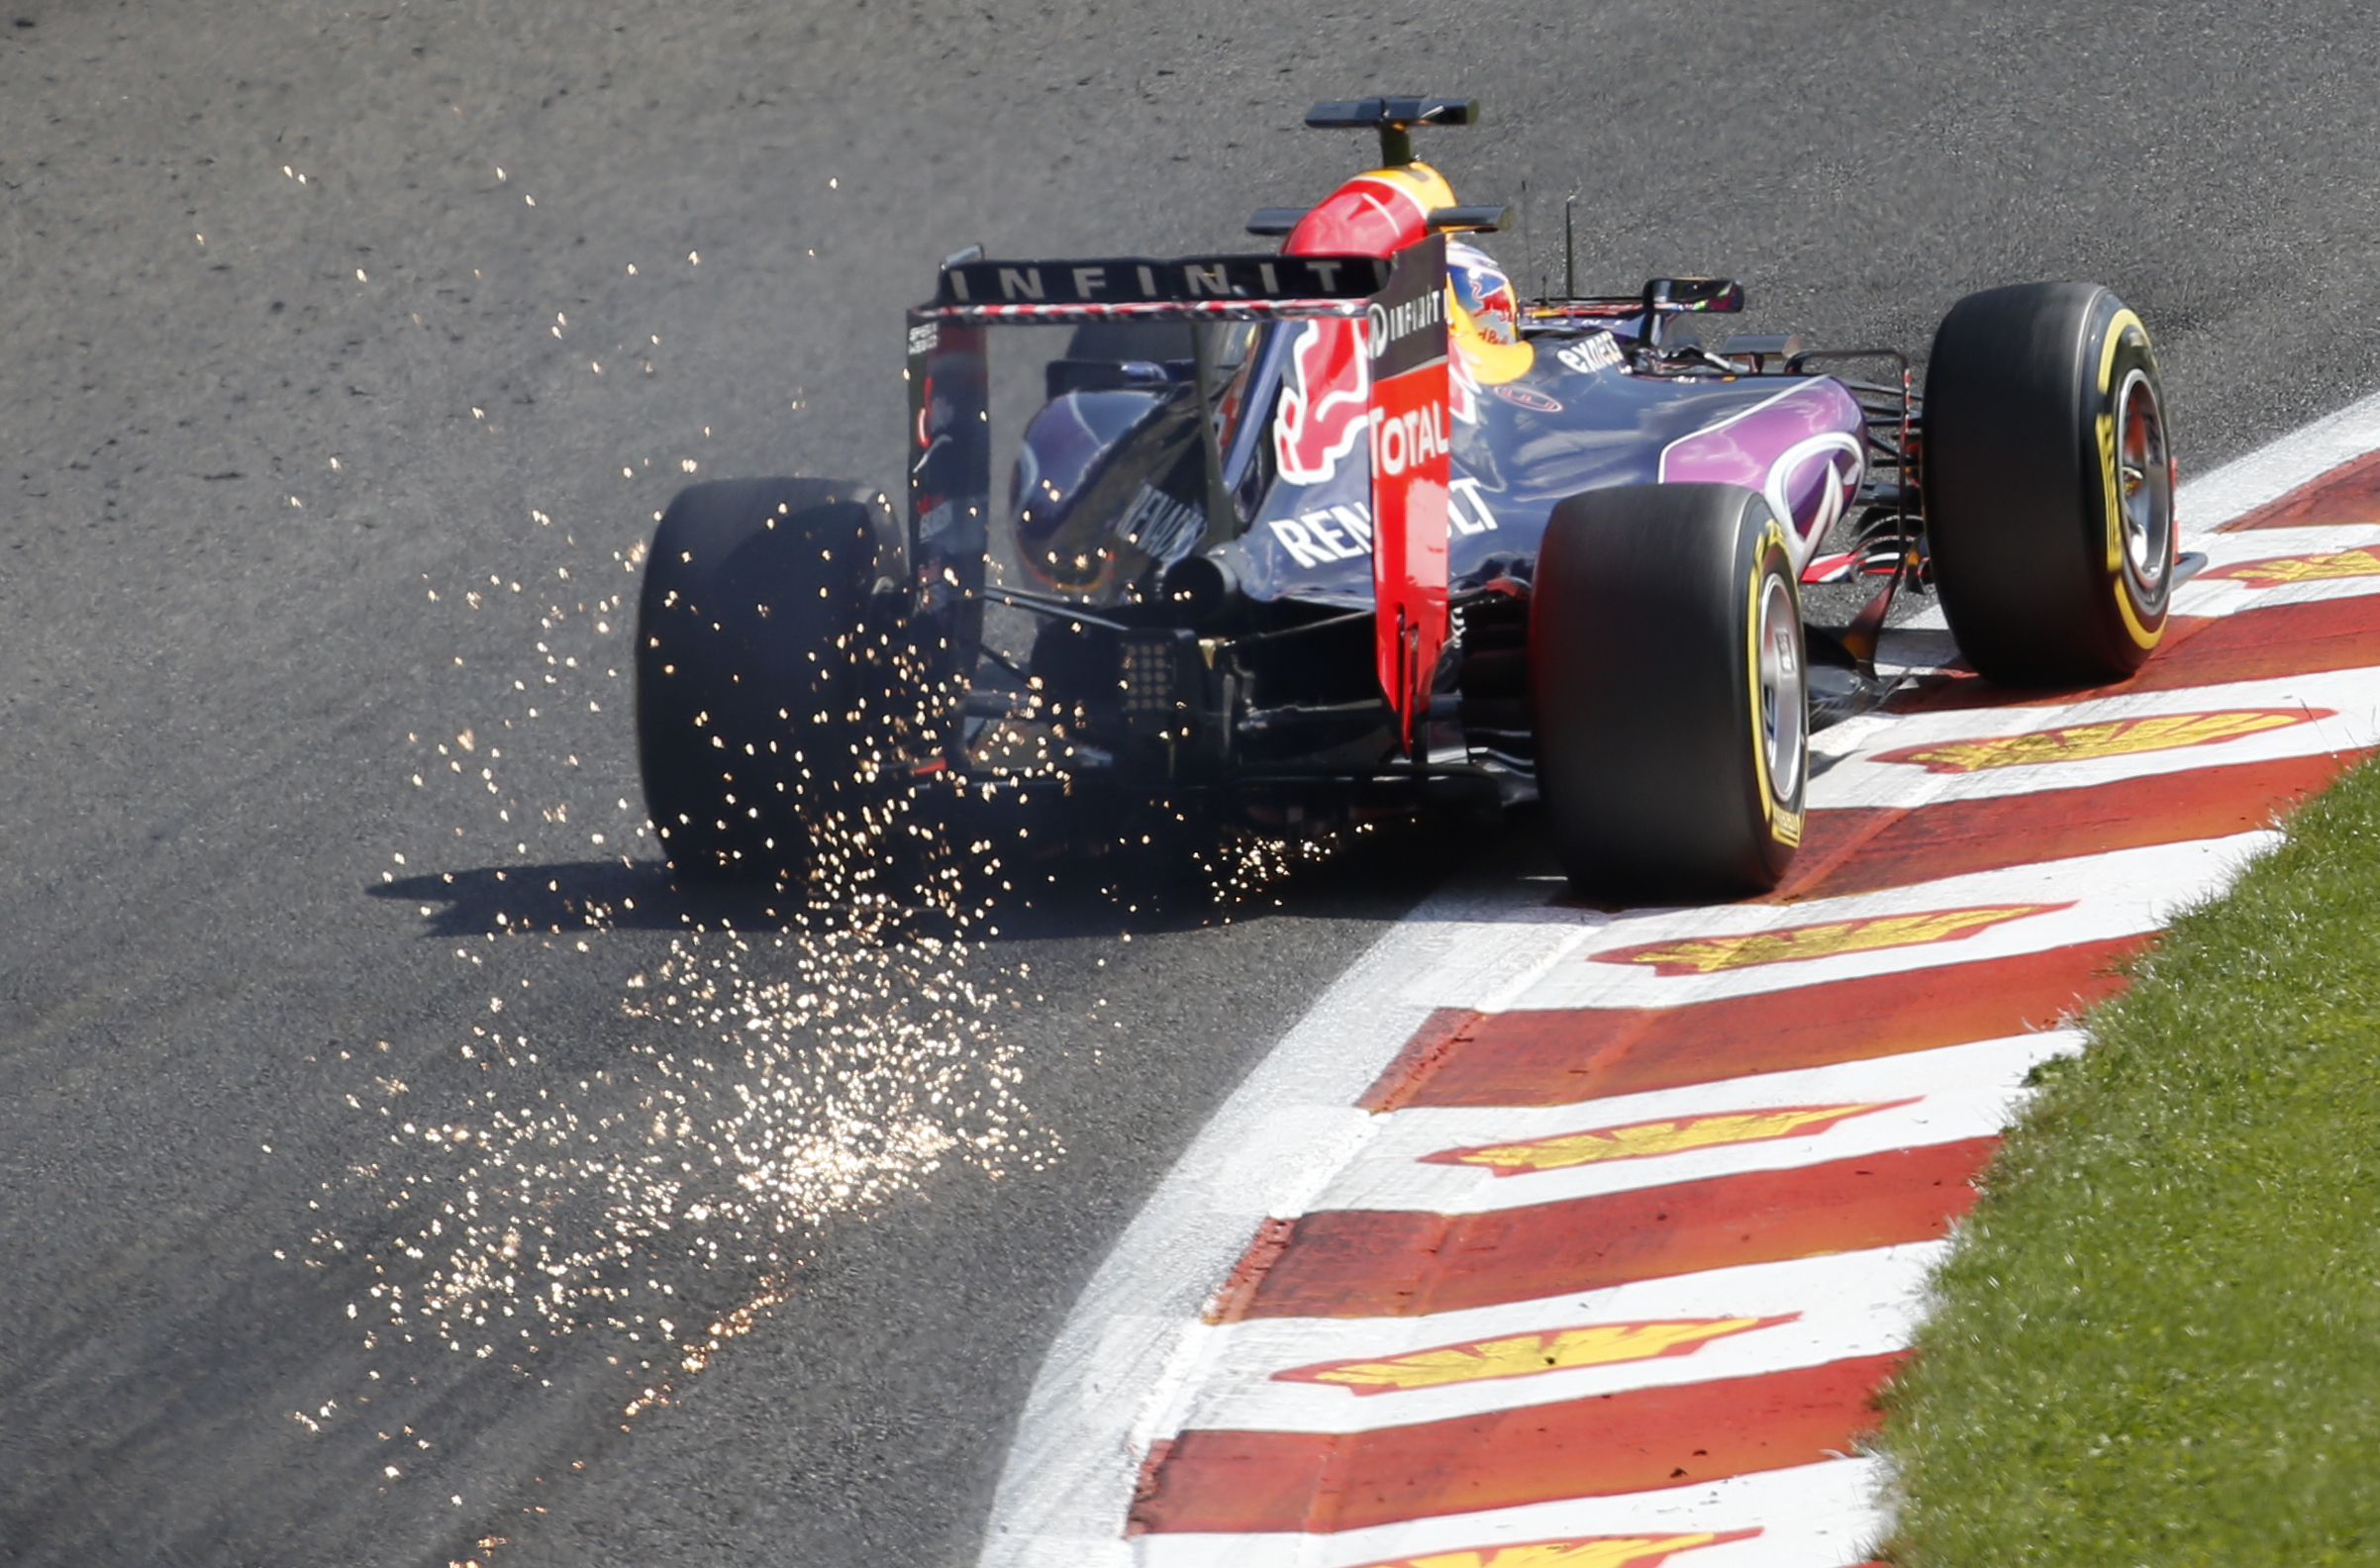 F1: Την αντικατάσταση των κινητήρων για το GP της Monza αποφάσισε η Red Bull